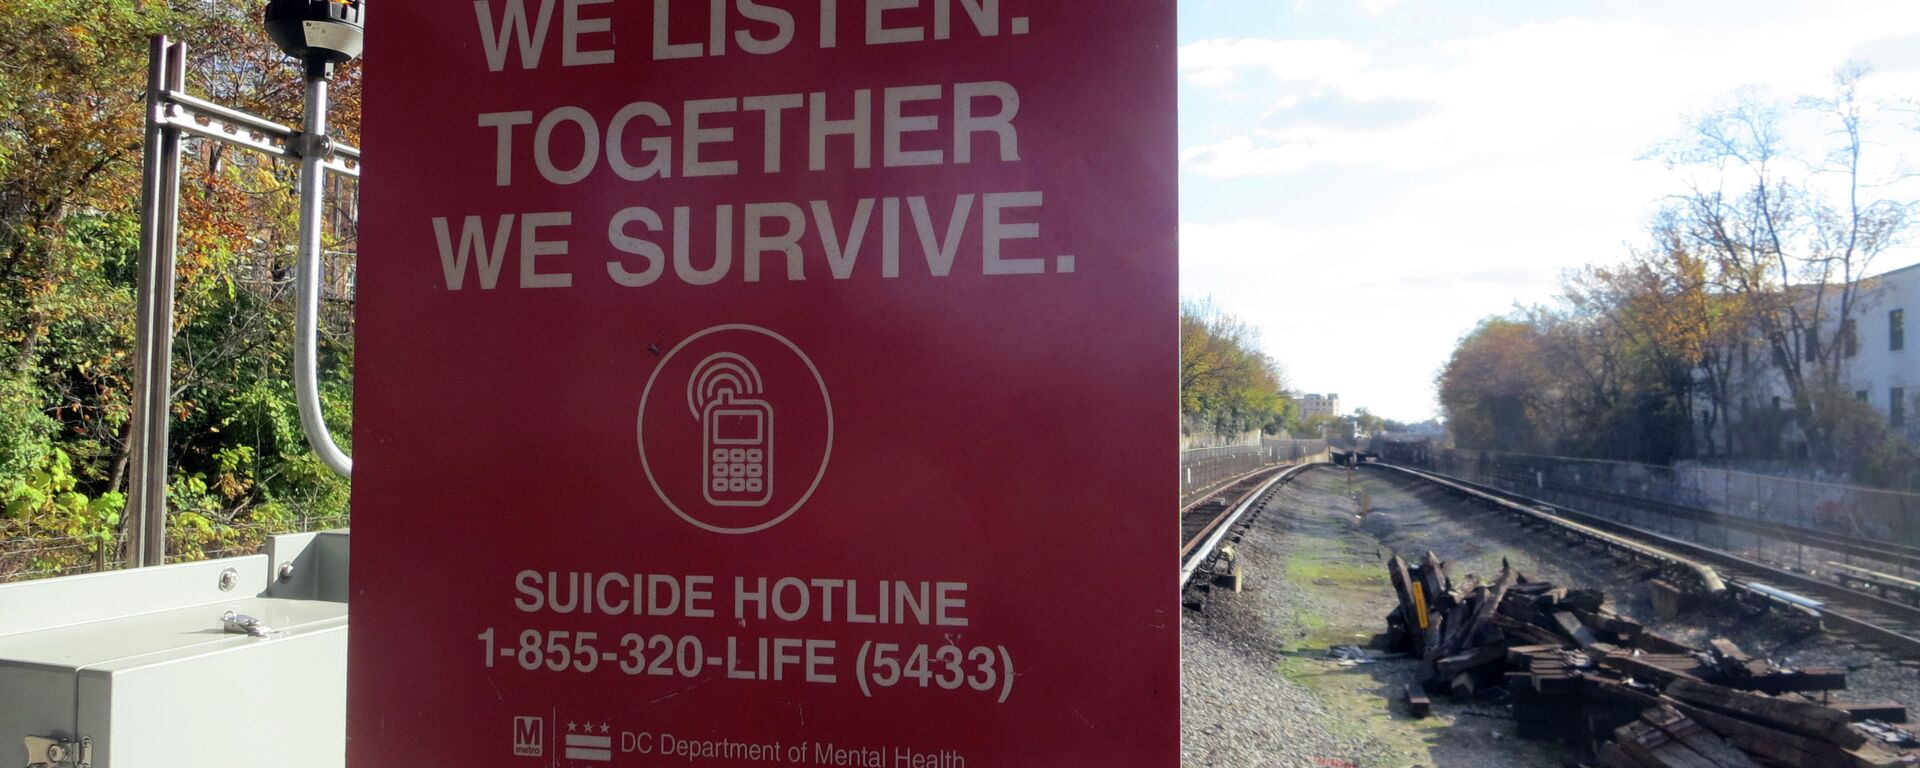 Suicide Hotline Sign in Washington DC - Sputnik International, 1920, 29.08.2021